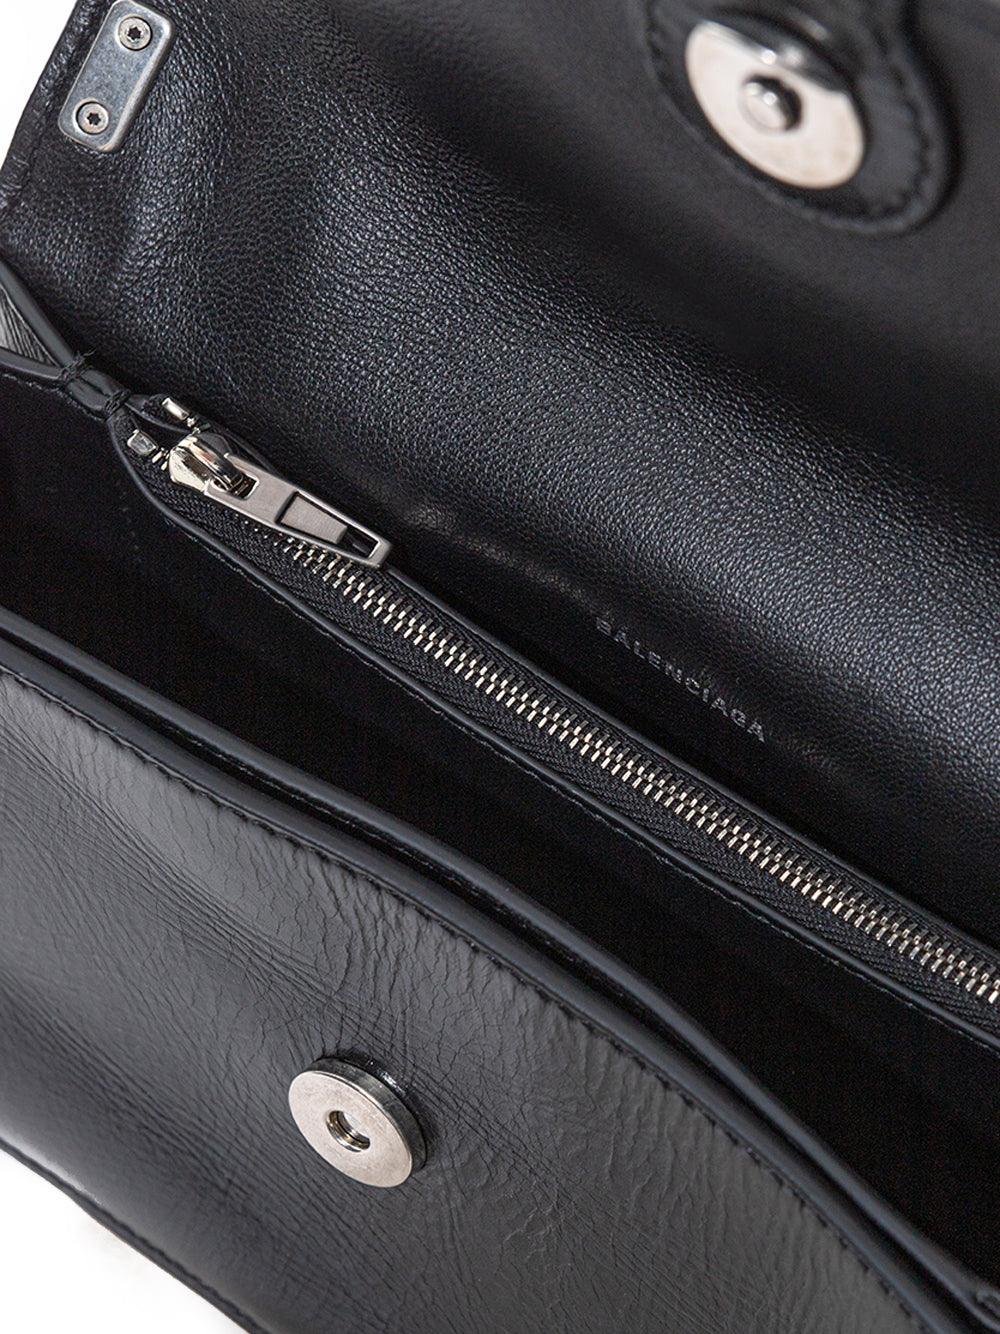 Elegant Black Mini Leather Shoulder Bag